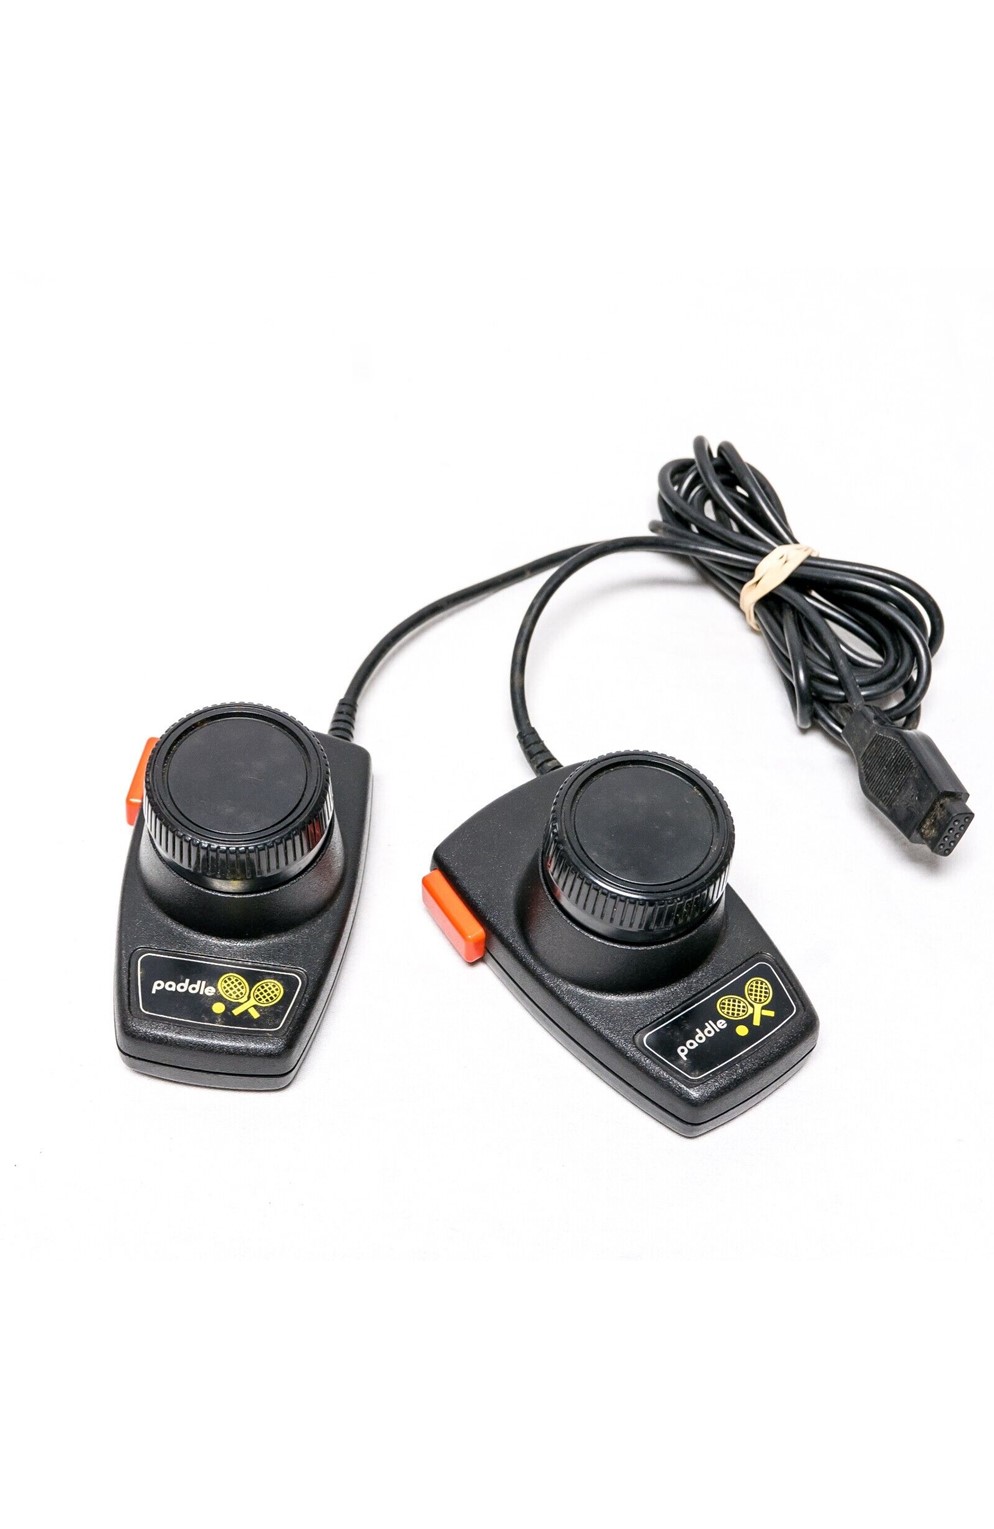 Atari 2600 Oem Paddle Controllers